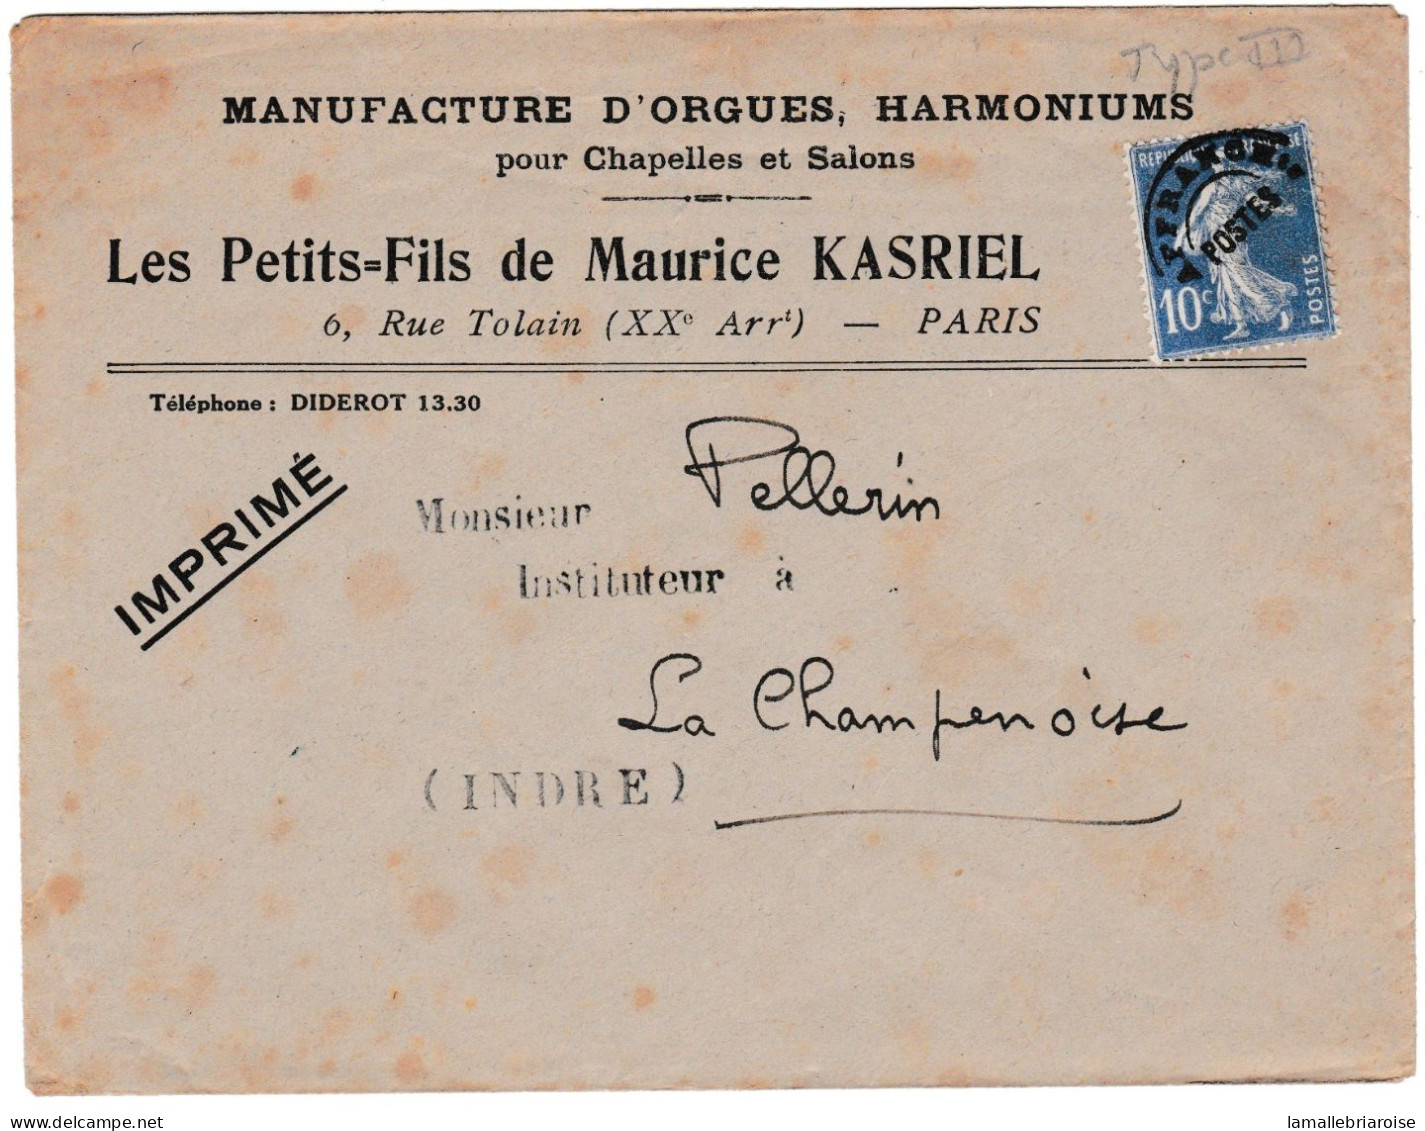 Enveloppe à Entête Publicitaire: Manufacture D'orgues, Harmoniums, Les Petits Fils De Maurice Kasriel. - Werbung